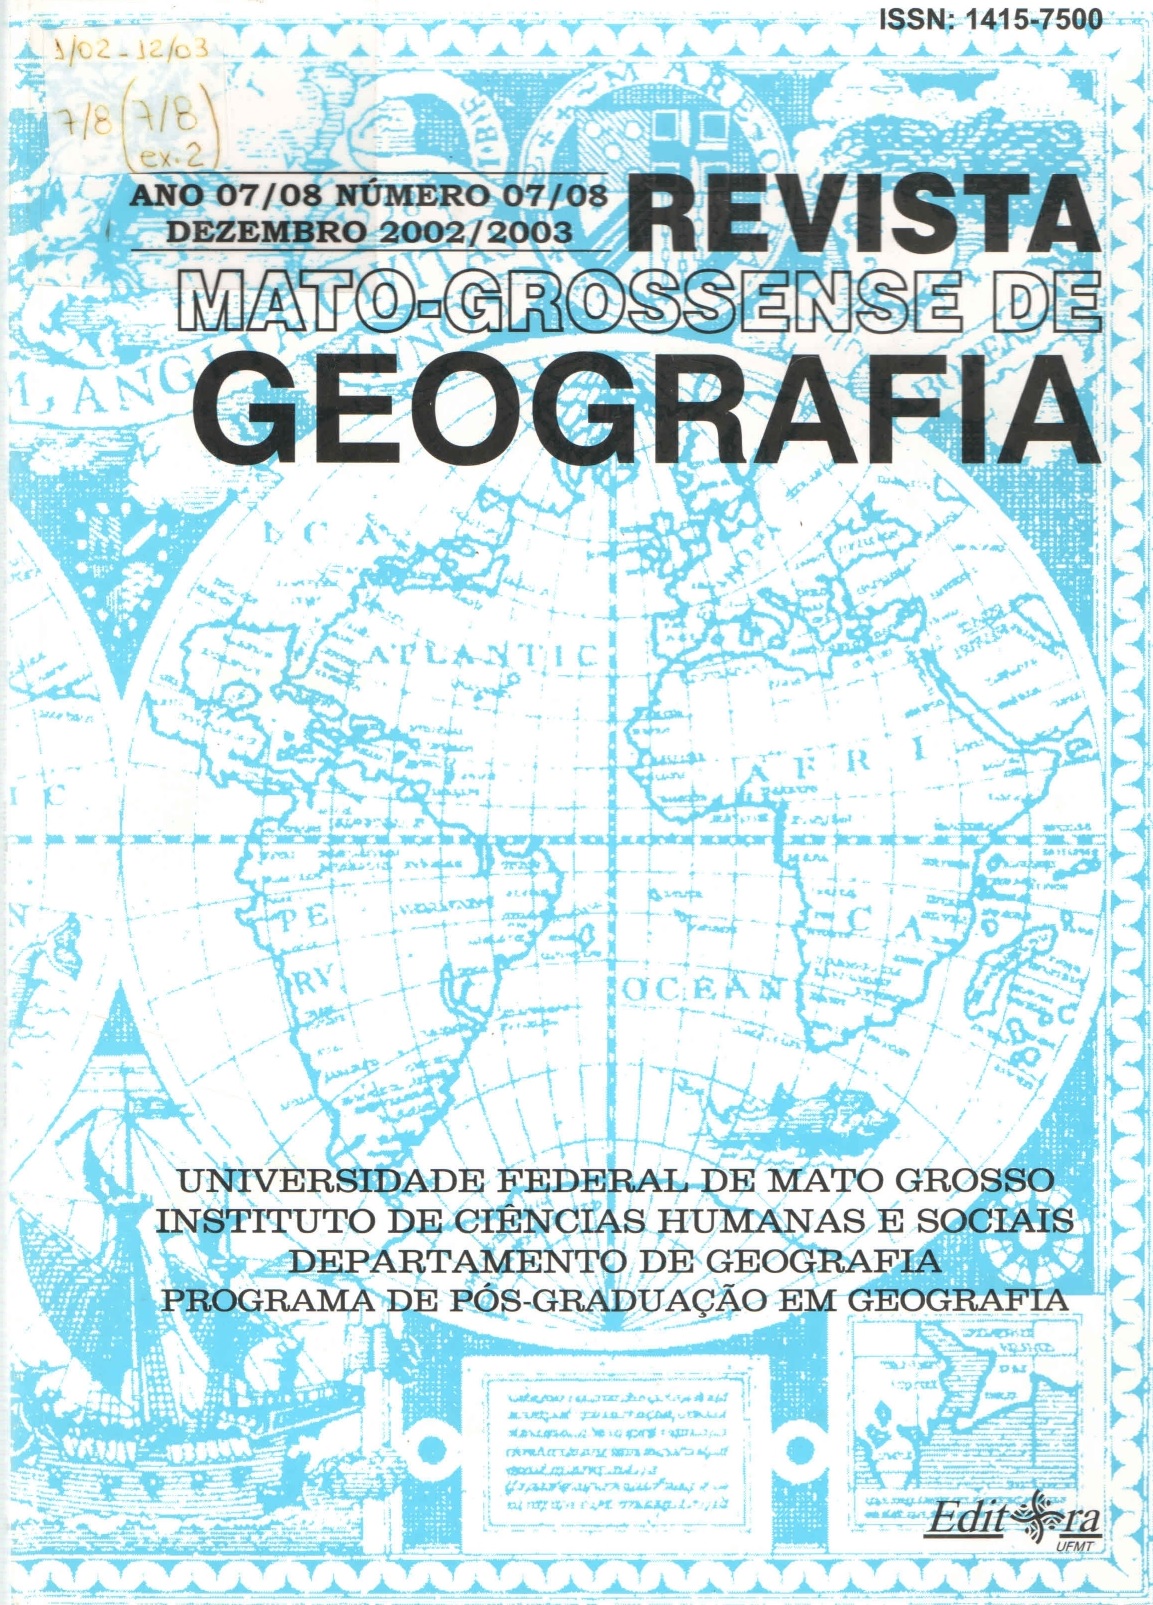 					Visualizar v. 7 n. 01 (2002): Revista Mato-Grossense de Geografia - Ano 2002/2003
				